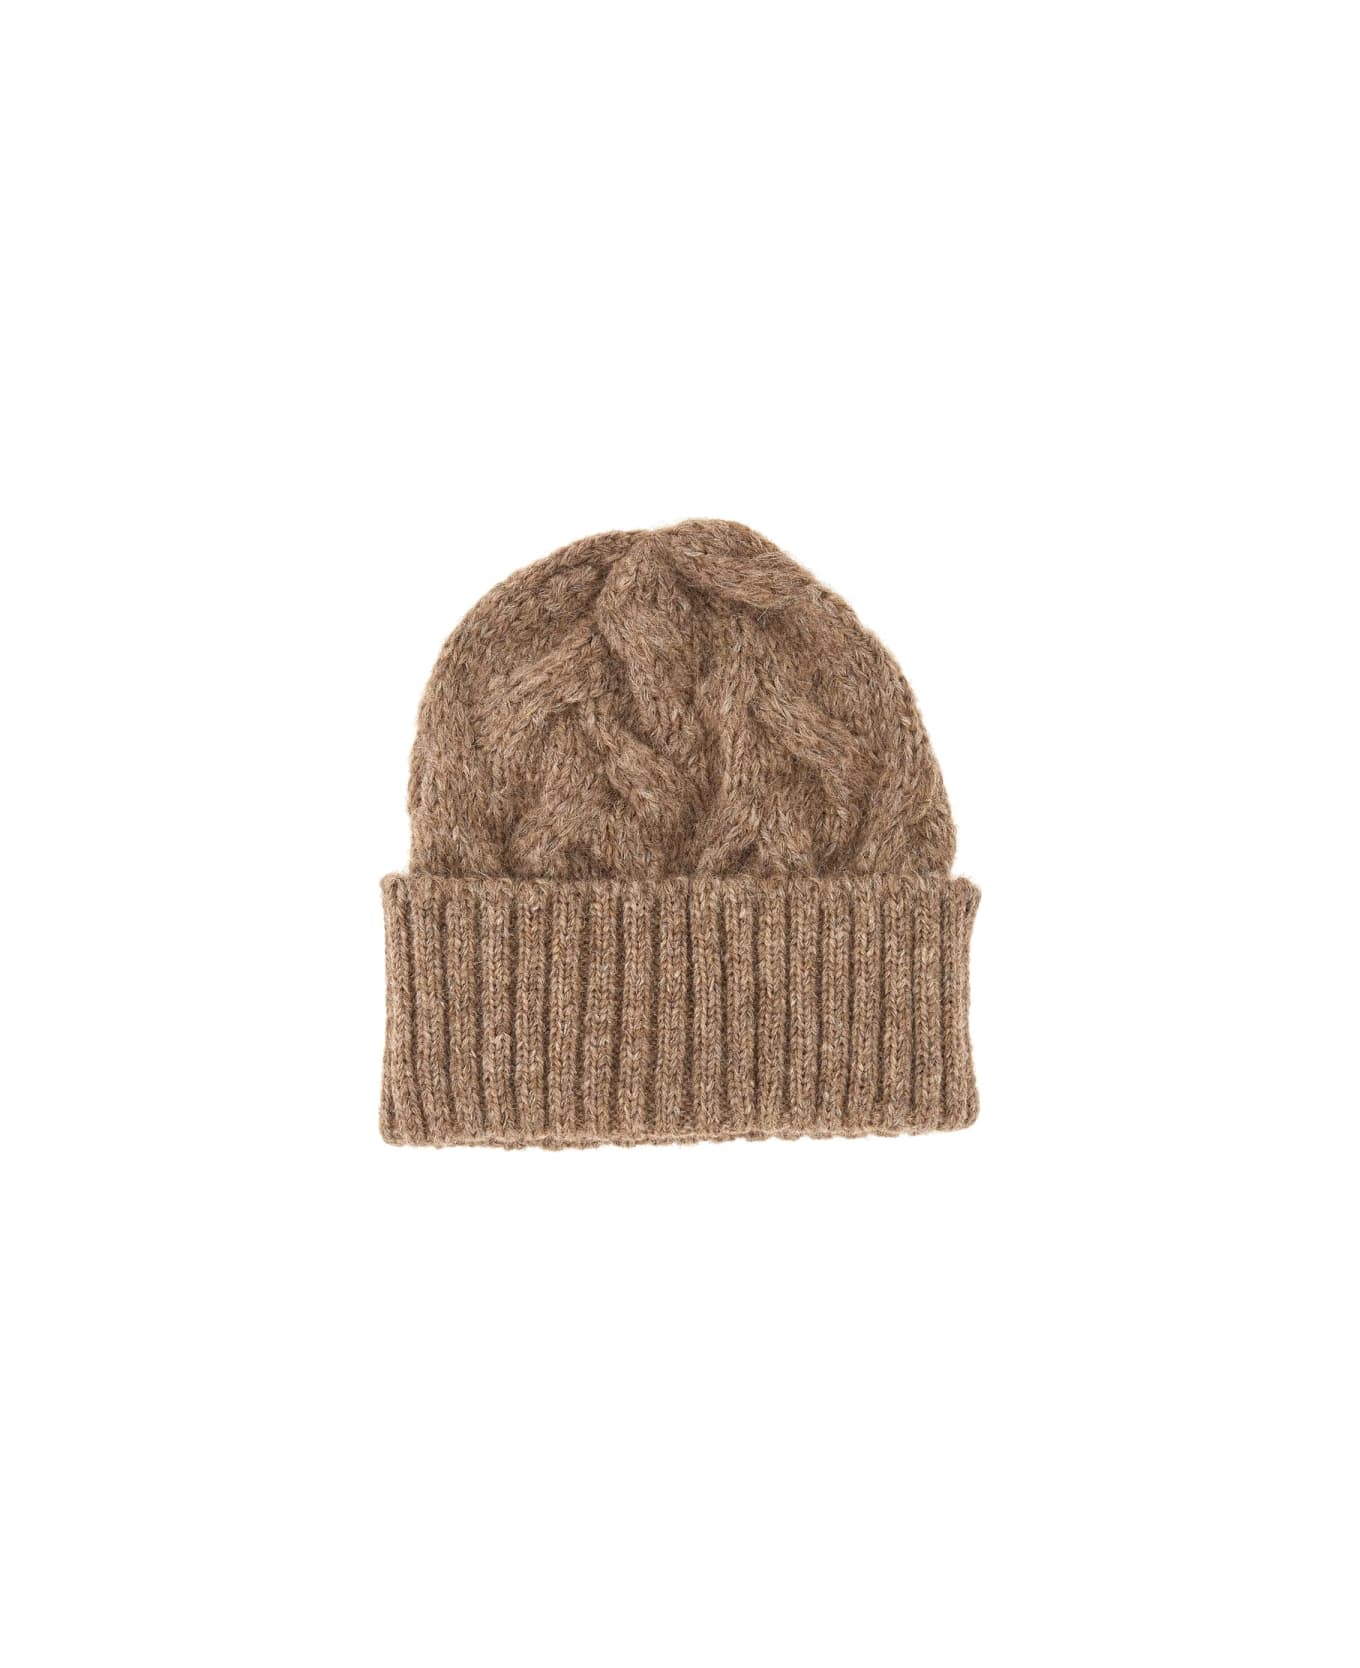 Séfr Knit Hat - BROWN 帽子